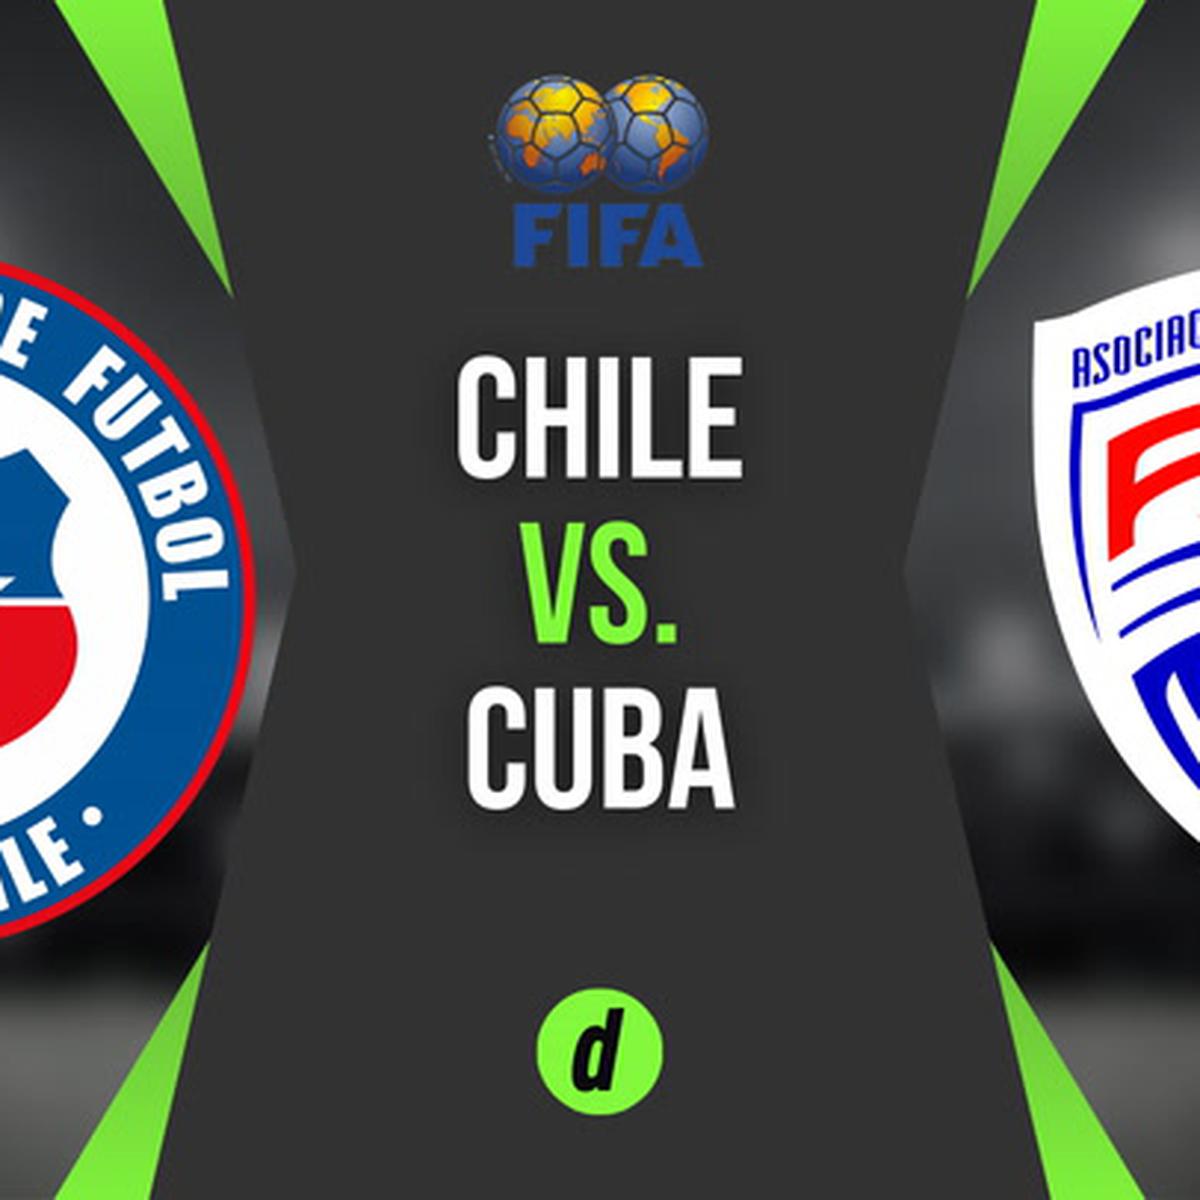 CHILE 3 - 0 CUBA, RESUMEN Y GOLES